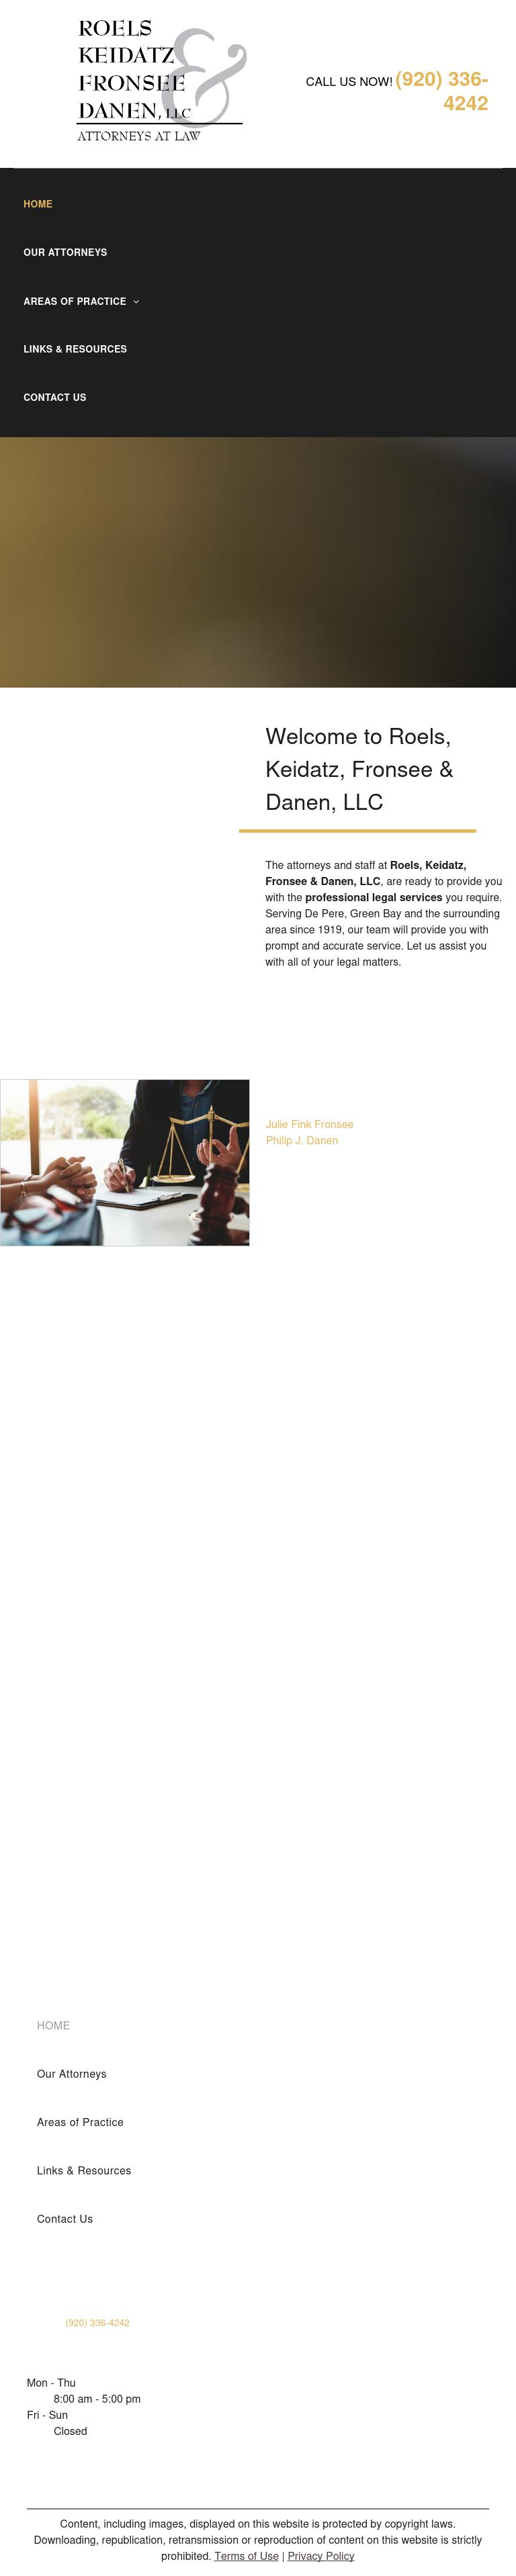 Hanaway Ross Law Firm - De Pere WI Lawyers